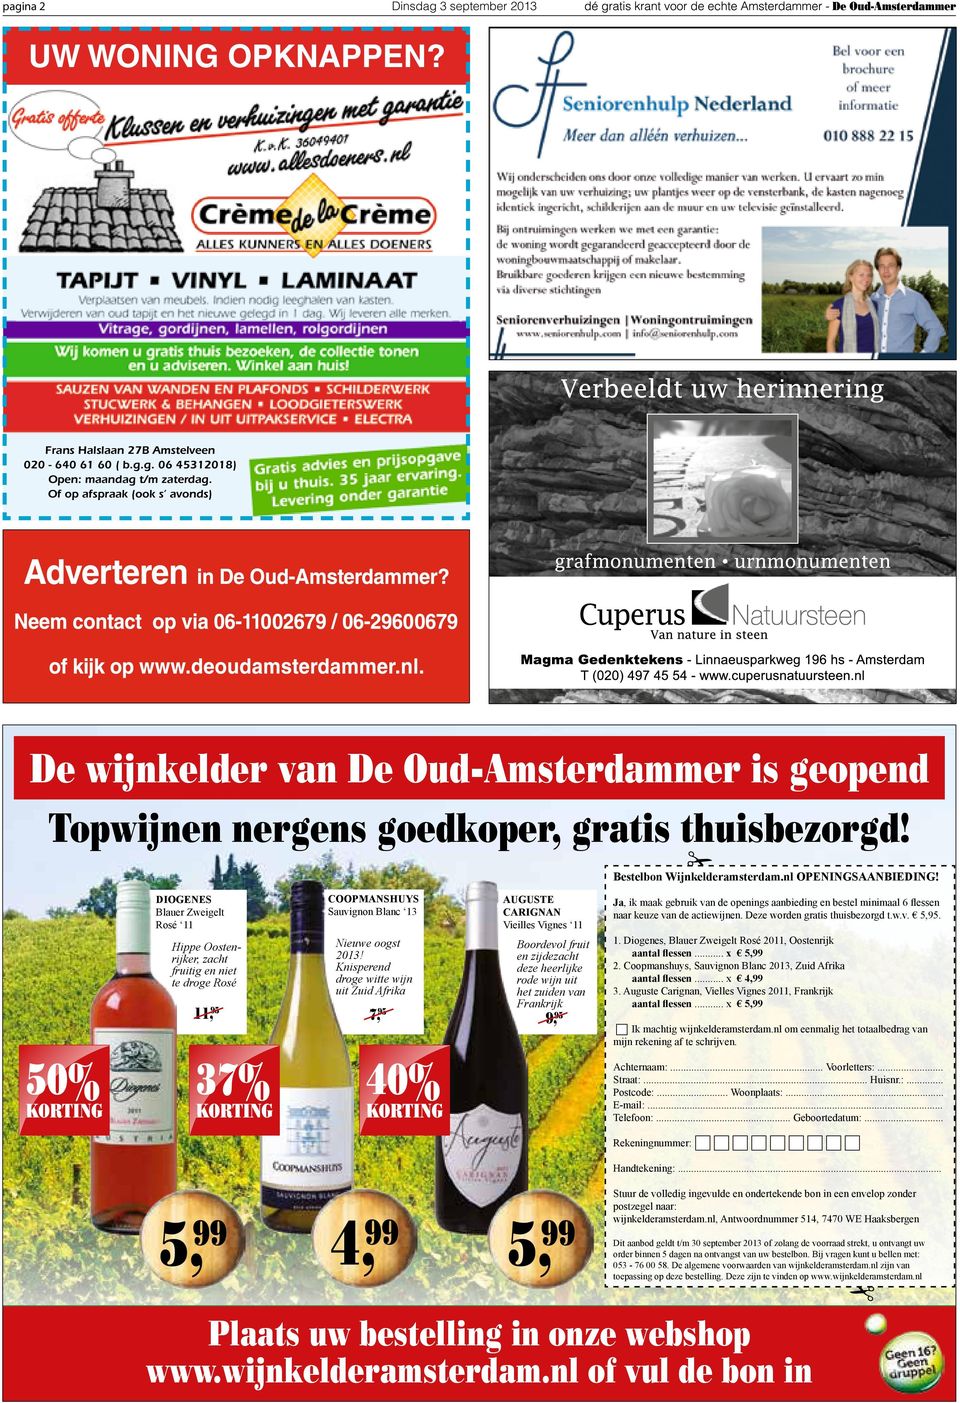 diogenes Blauer Zweigelt Rosé 11 Hippe Oostenrijker, zacht fruitig en niet te droge Rosé 11, 95 coopmanshuys Sauvignon Blanc 13 Nieuwe oogst 2013!